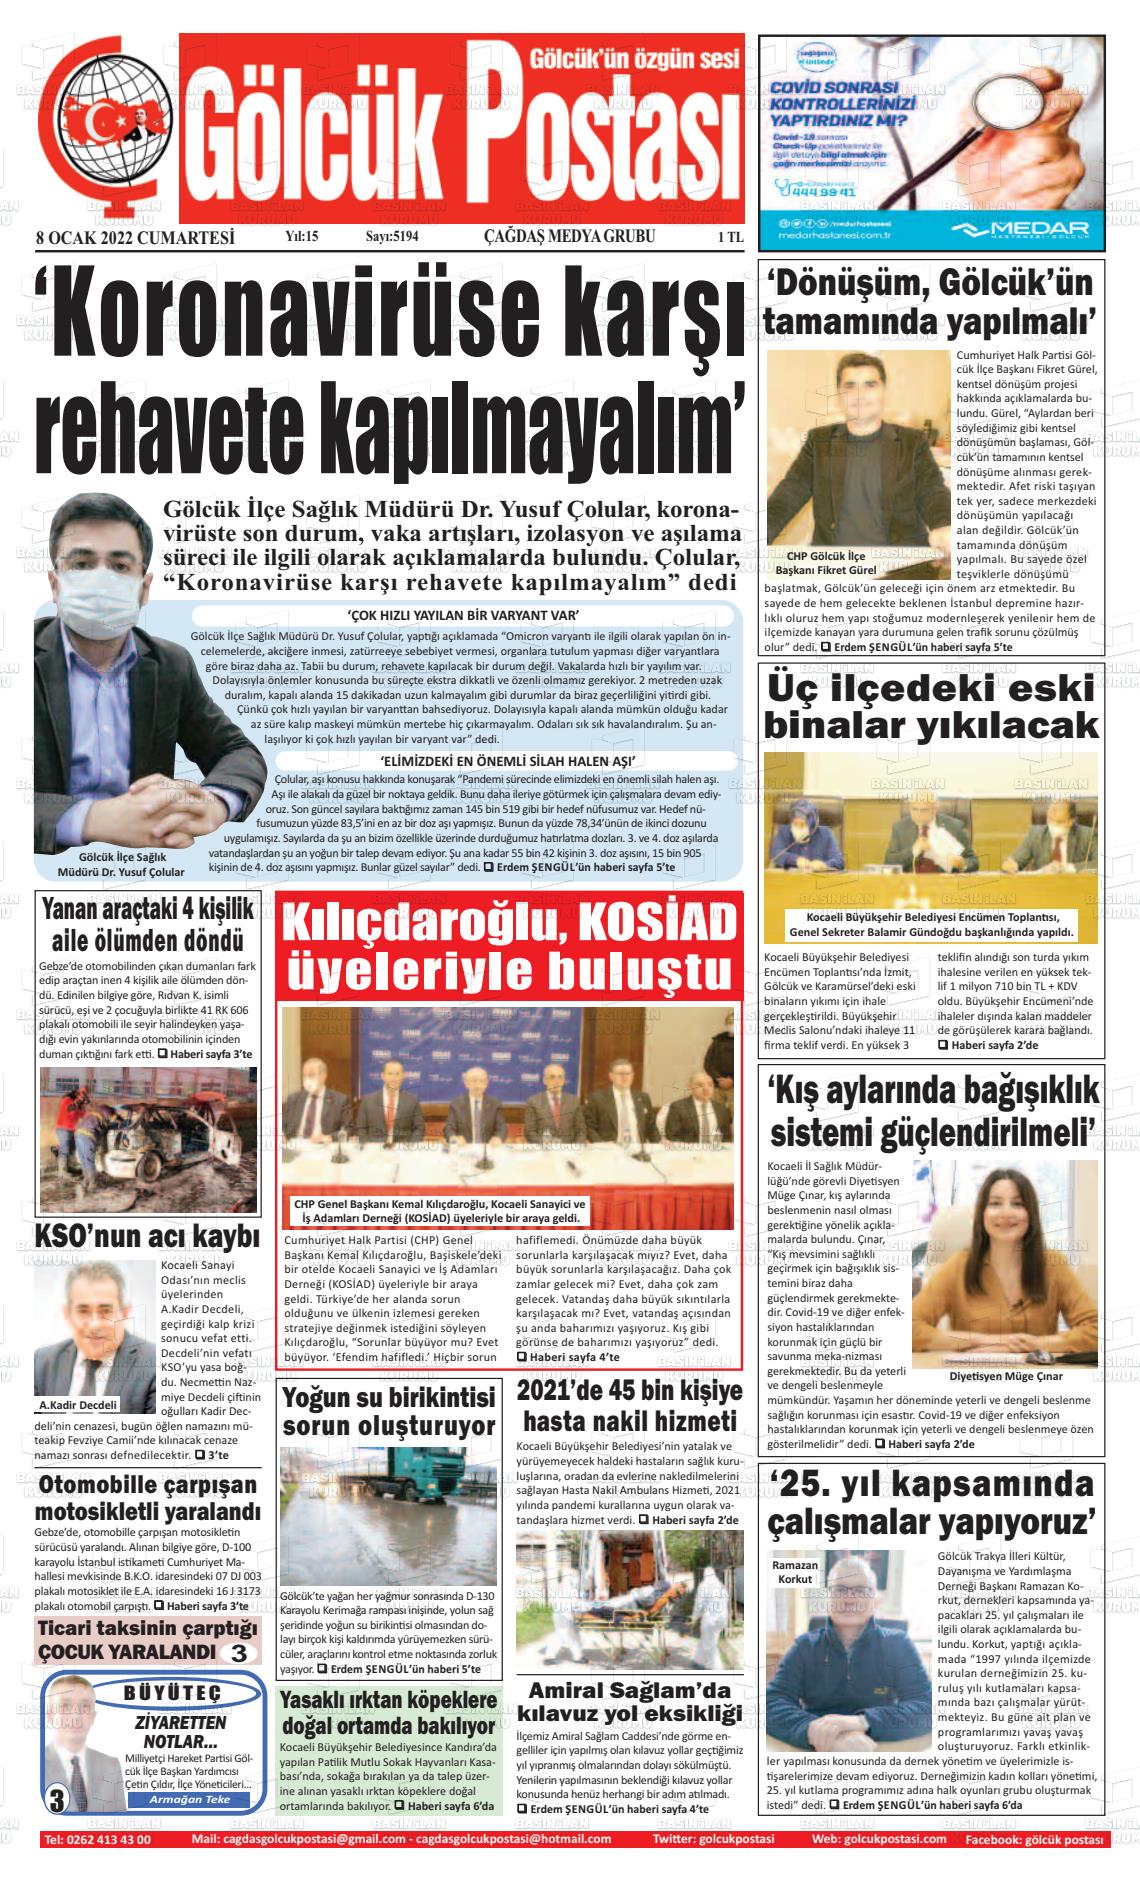 08 Ocak 2022 Gölcük Postasi Gazete Manşeti